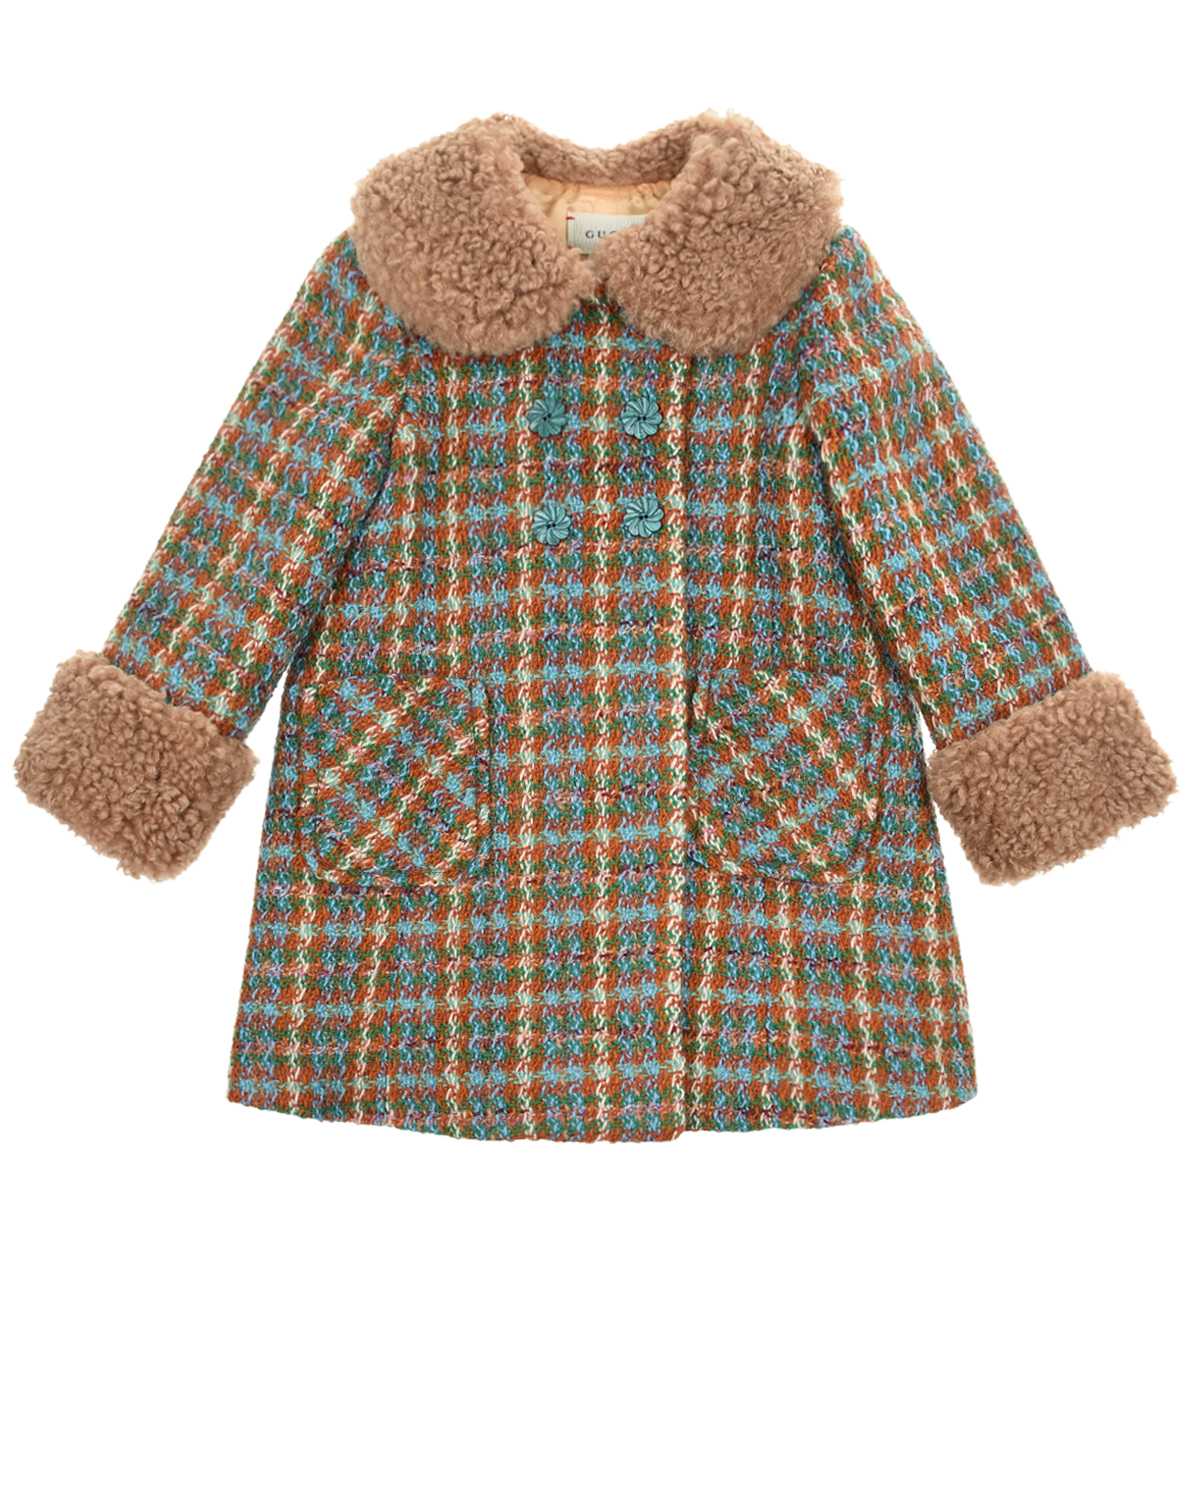 Клетчатое пальто с меховым воротом и манжетами GUCCI детское, размер 98, цвет мультиколор